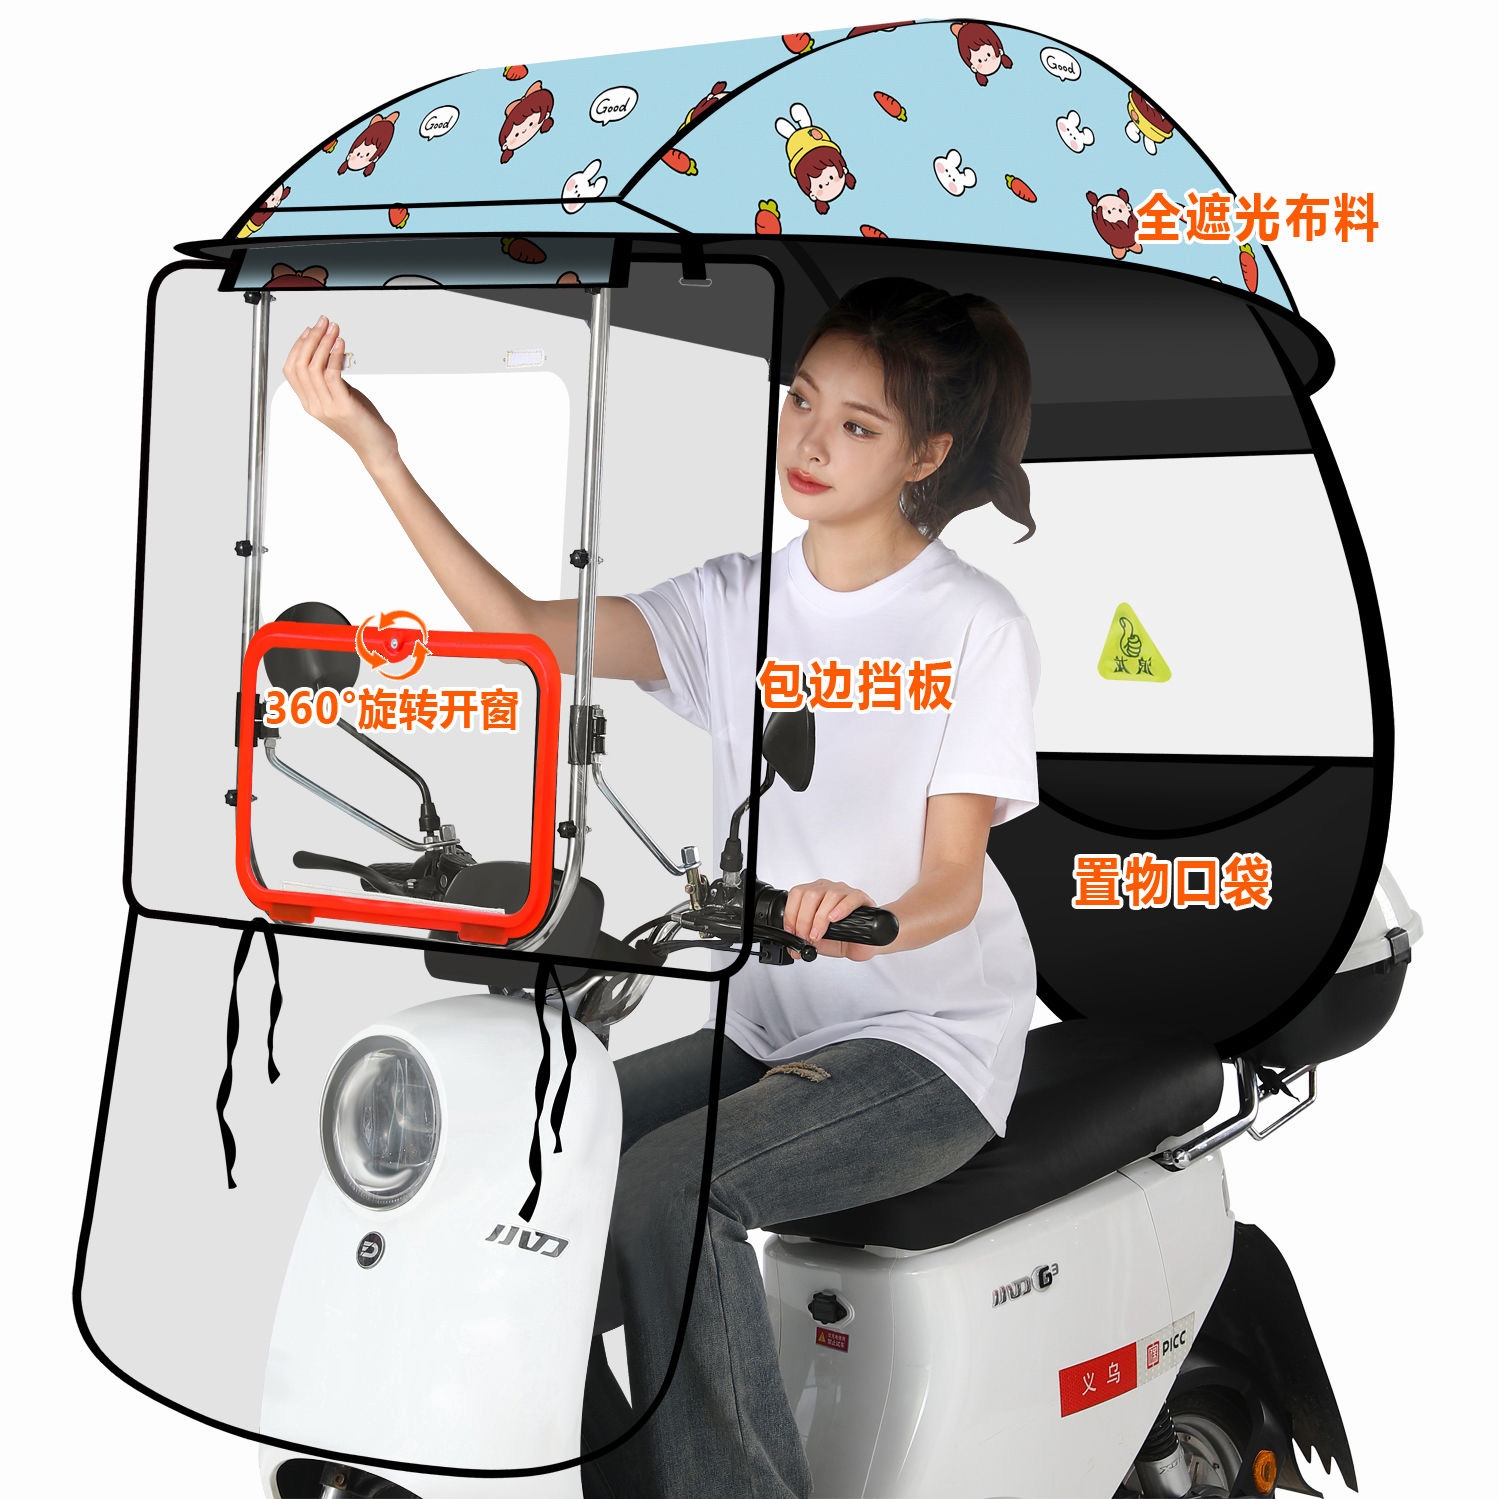 电动车雨棚一体摩托装专用伞支撑架防晒蓬瓶风可折叠遮单独顶篷布